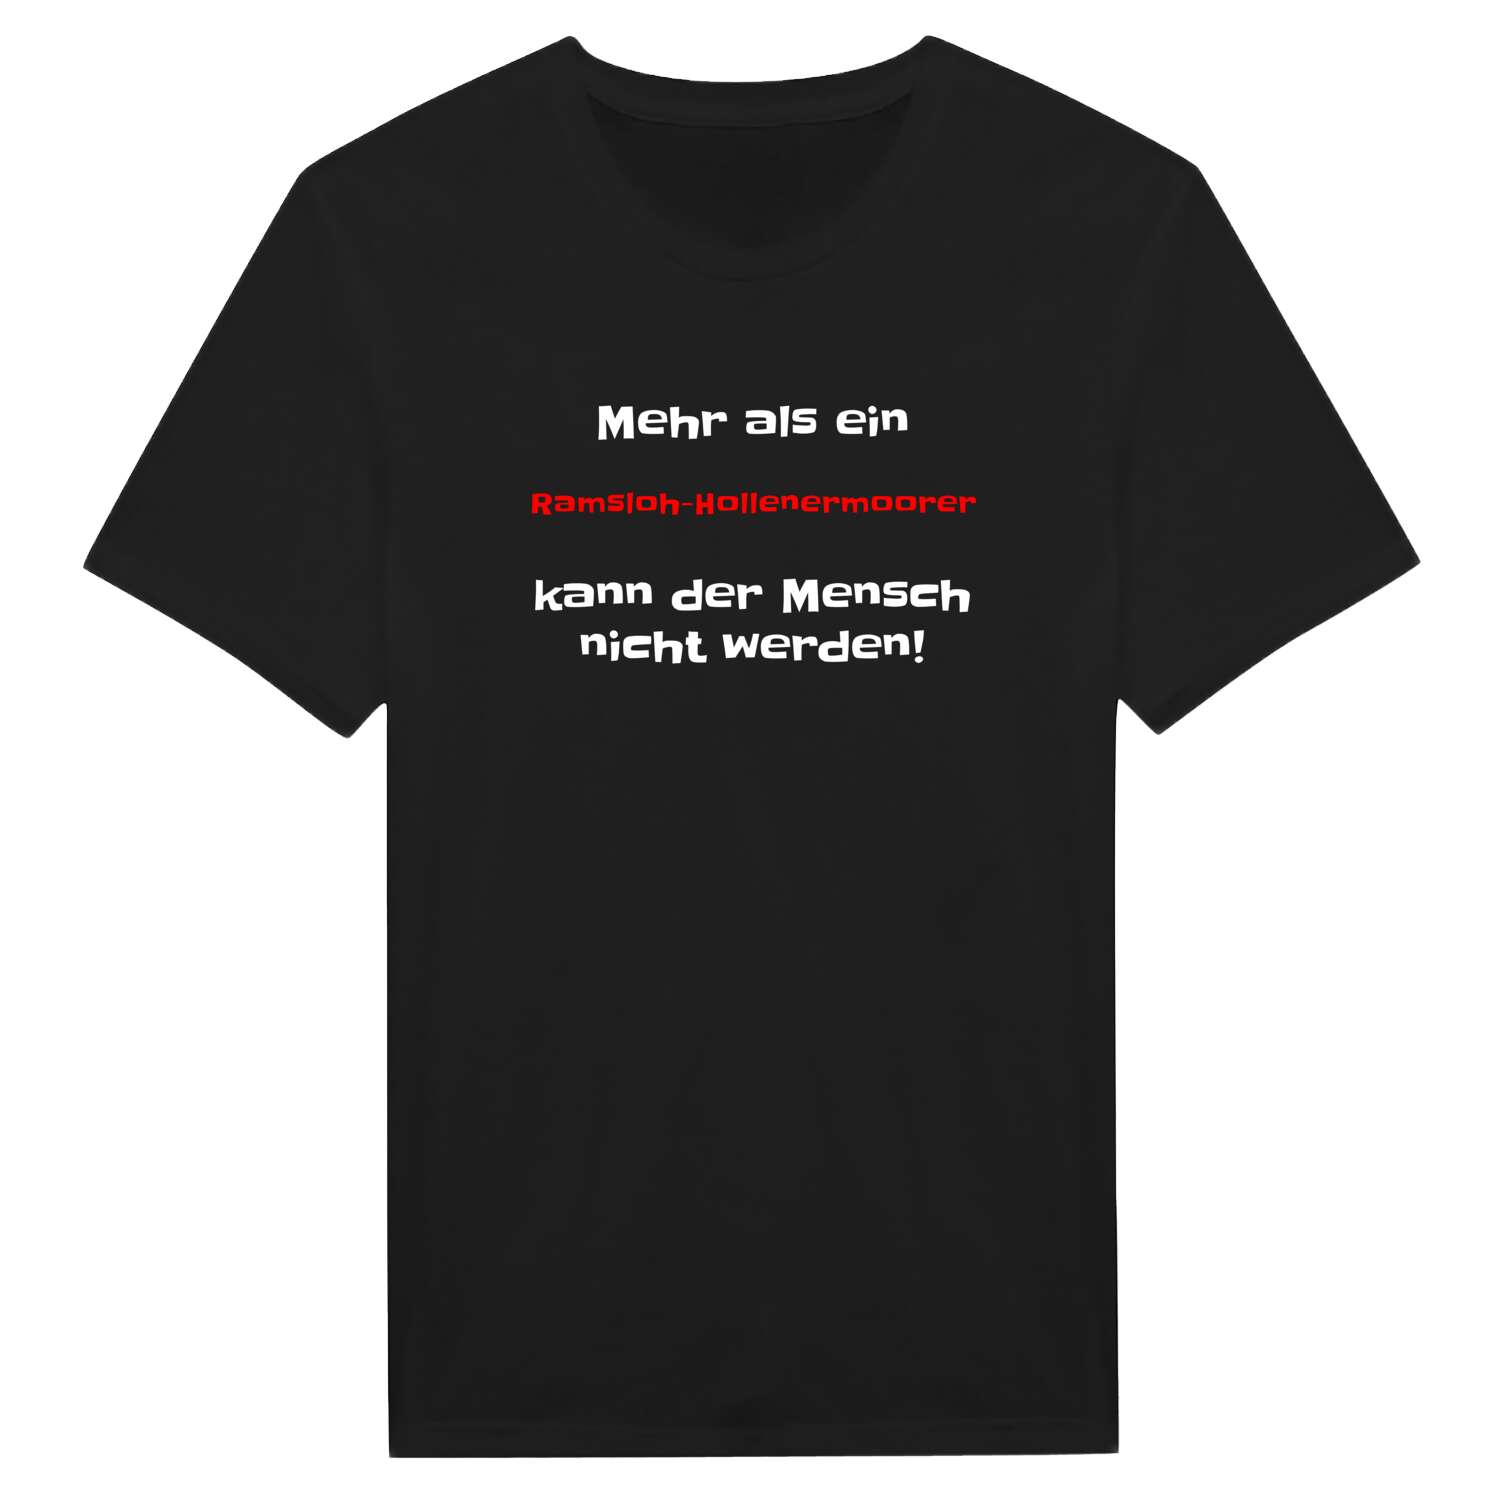 Ramsloh-Hollenermoor T-Shirt »Mehr als ein«